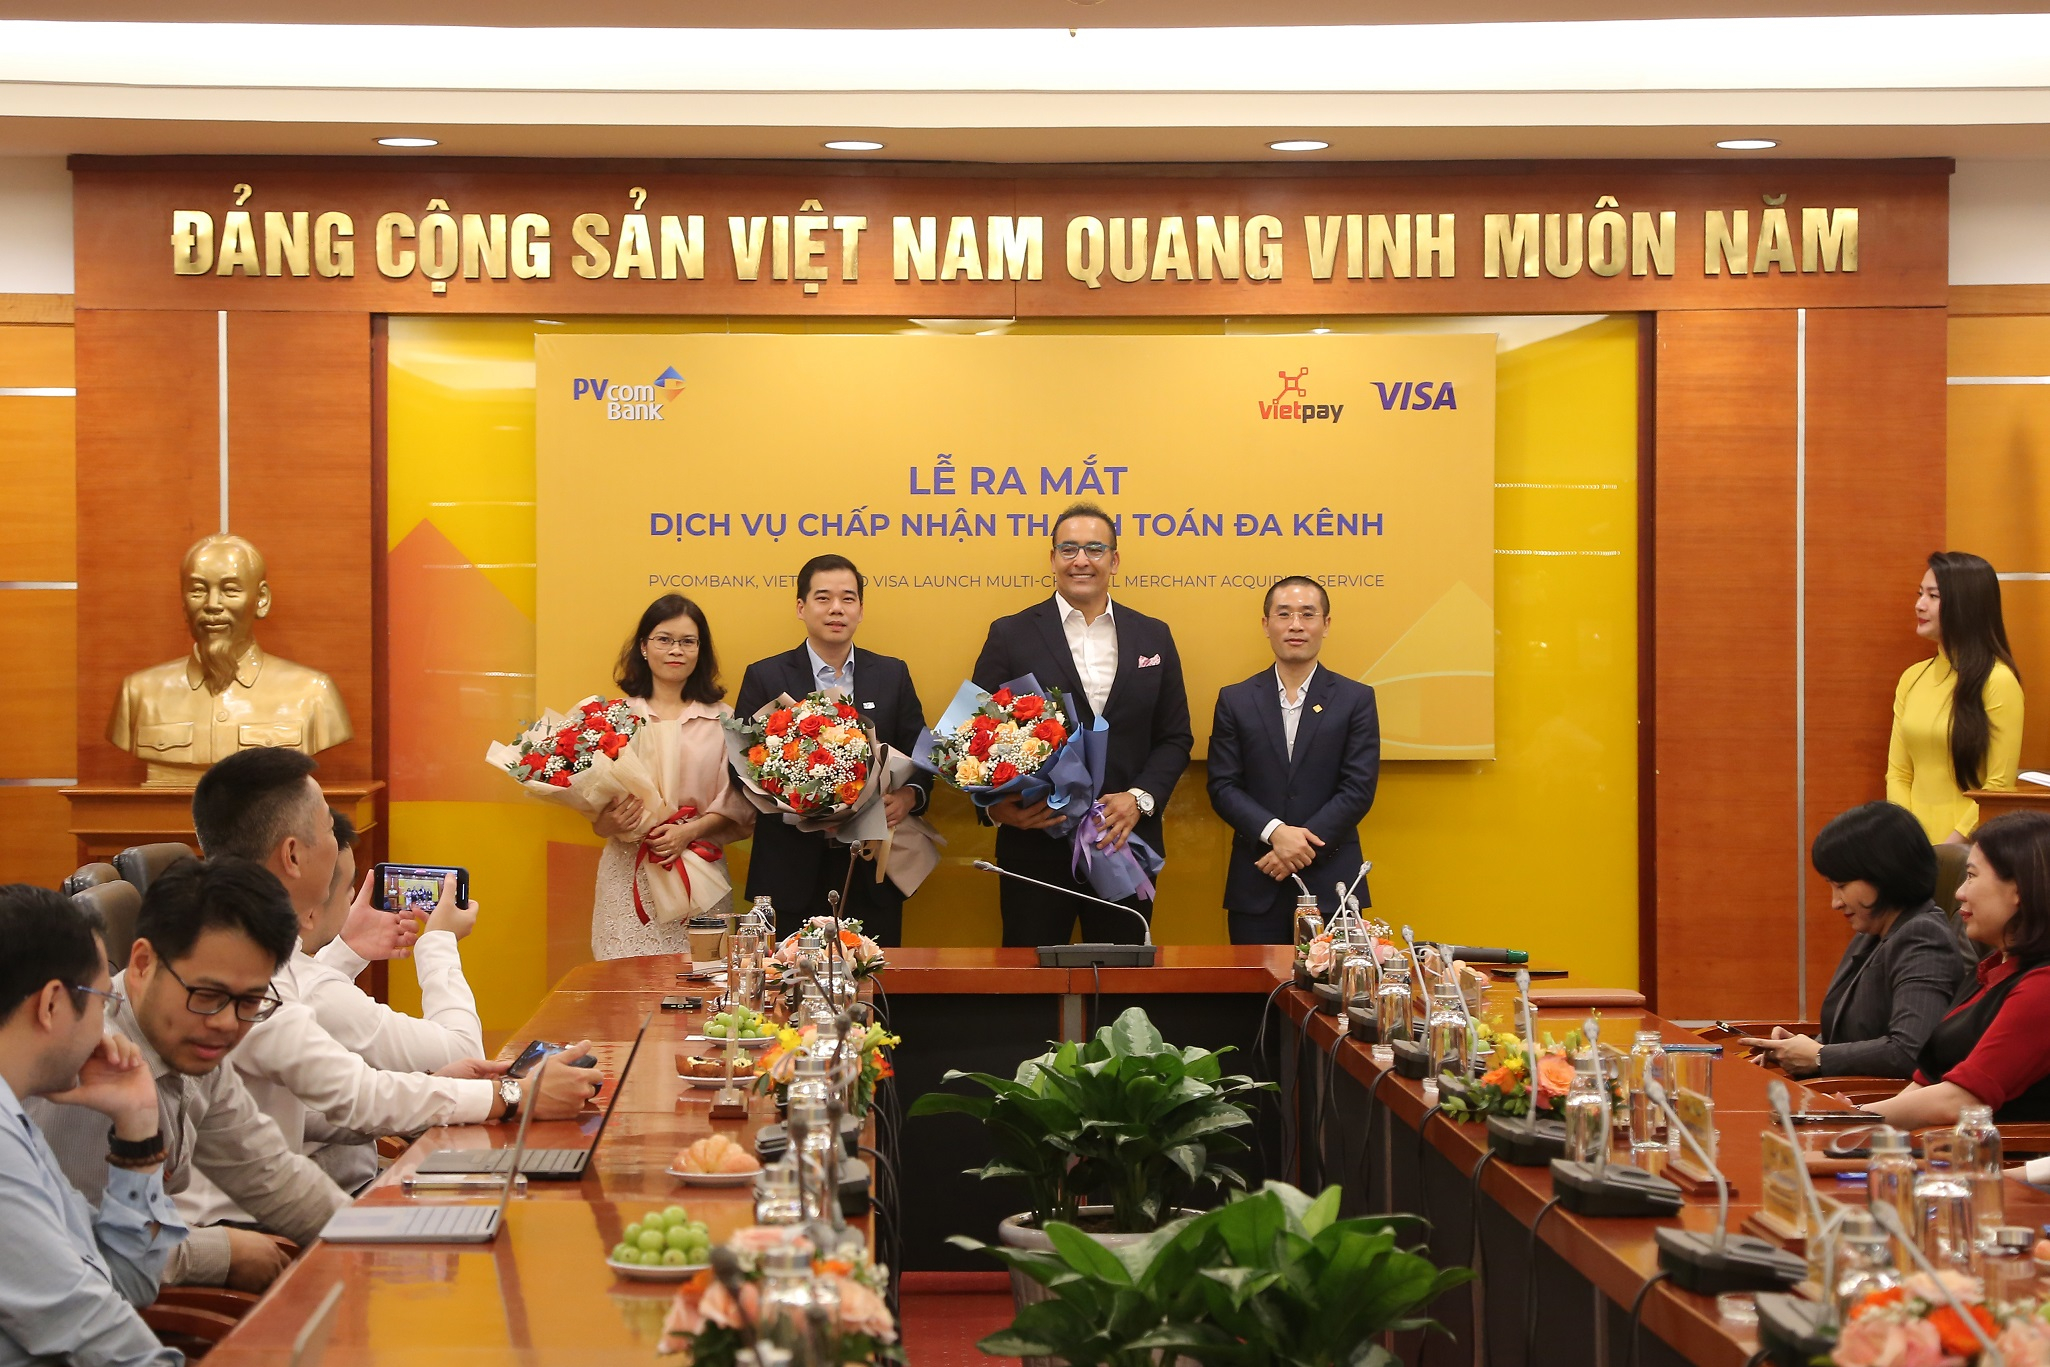 PVcomBank đánh giá cao hợp tác lần này và khẳng định những giá trị của dự án mang lại thị trường tài chính Việt Nam